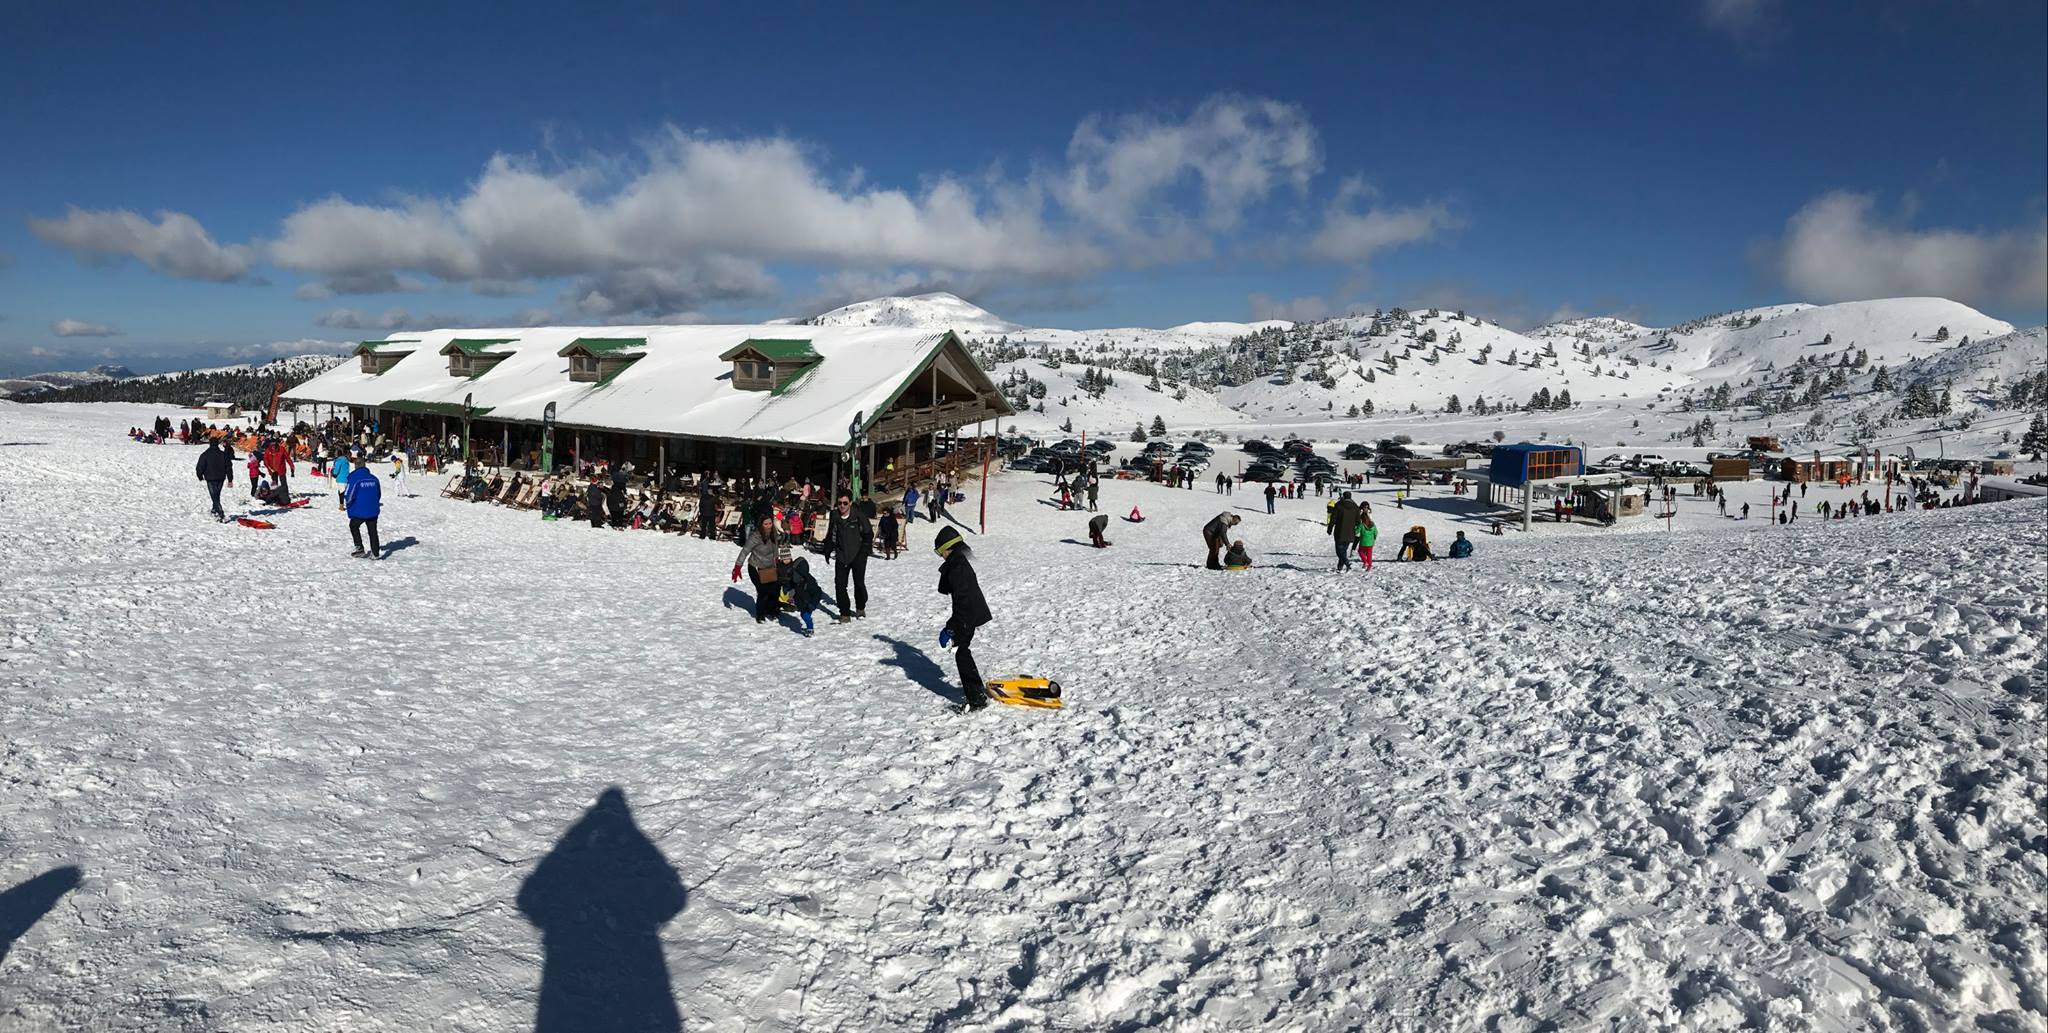 Καλάβρυτα: Κλειστό το χιονοδρομικό κέντρο λόγω χιονοστιβάδας!